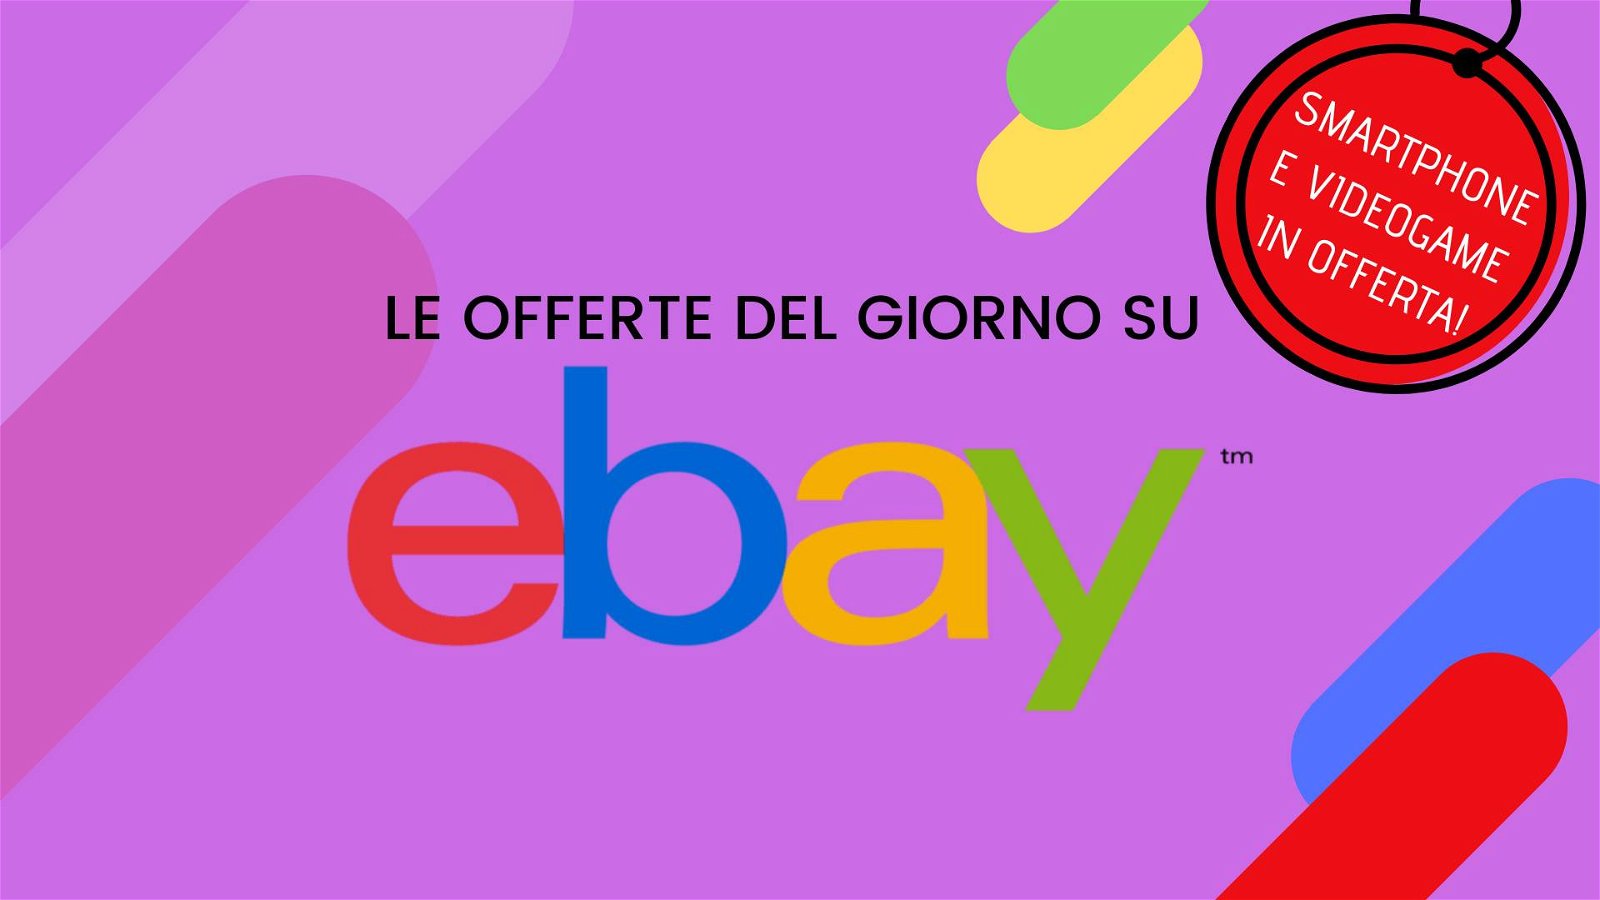 Immagine di Offerte del giorno eBay: smartphone e videogame a prezzi eccezionali!